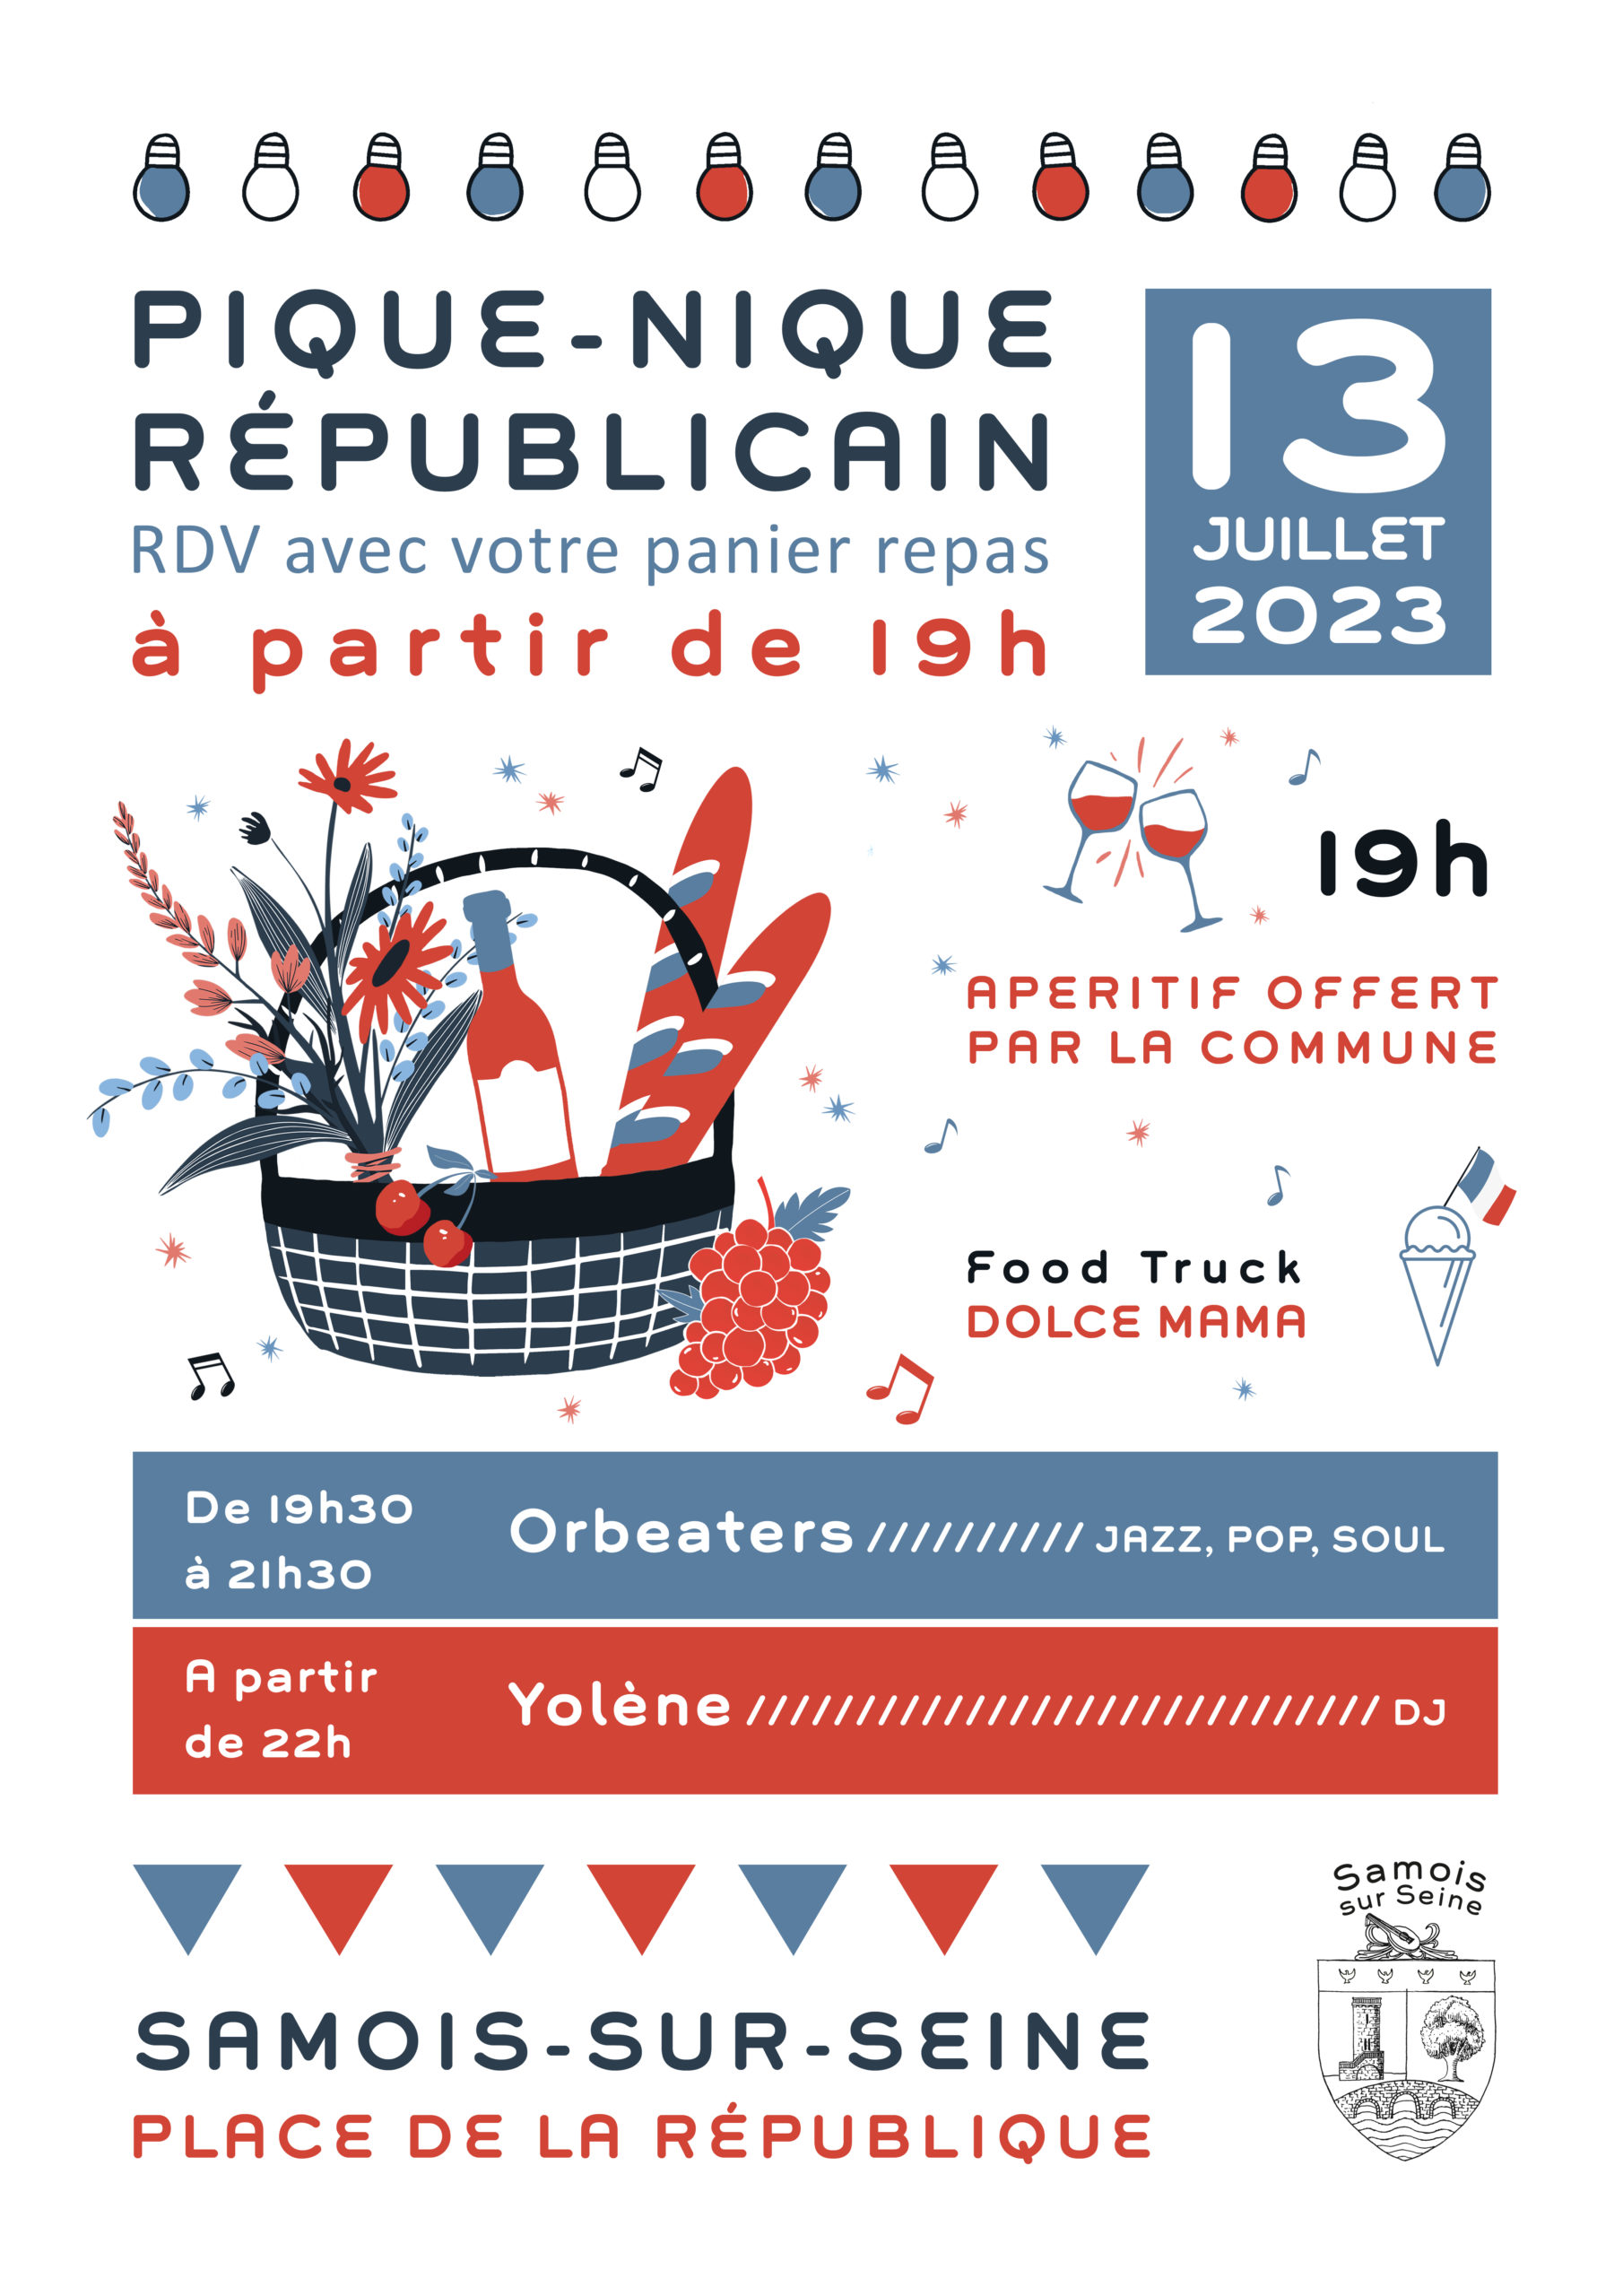 Pique Nique Républicain 13 Juillet 2023 Samois-sur-Seine